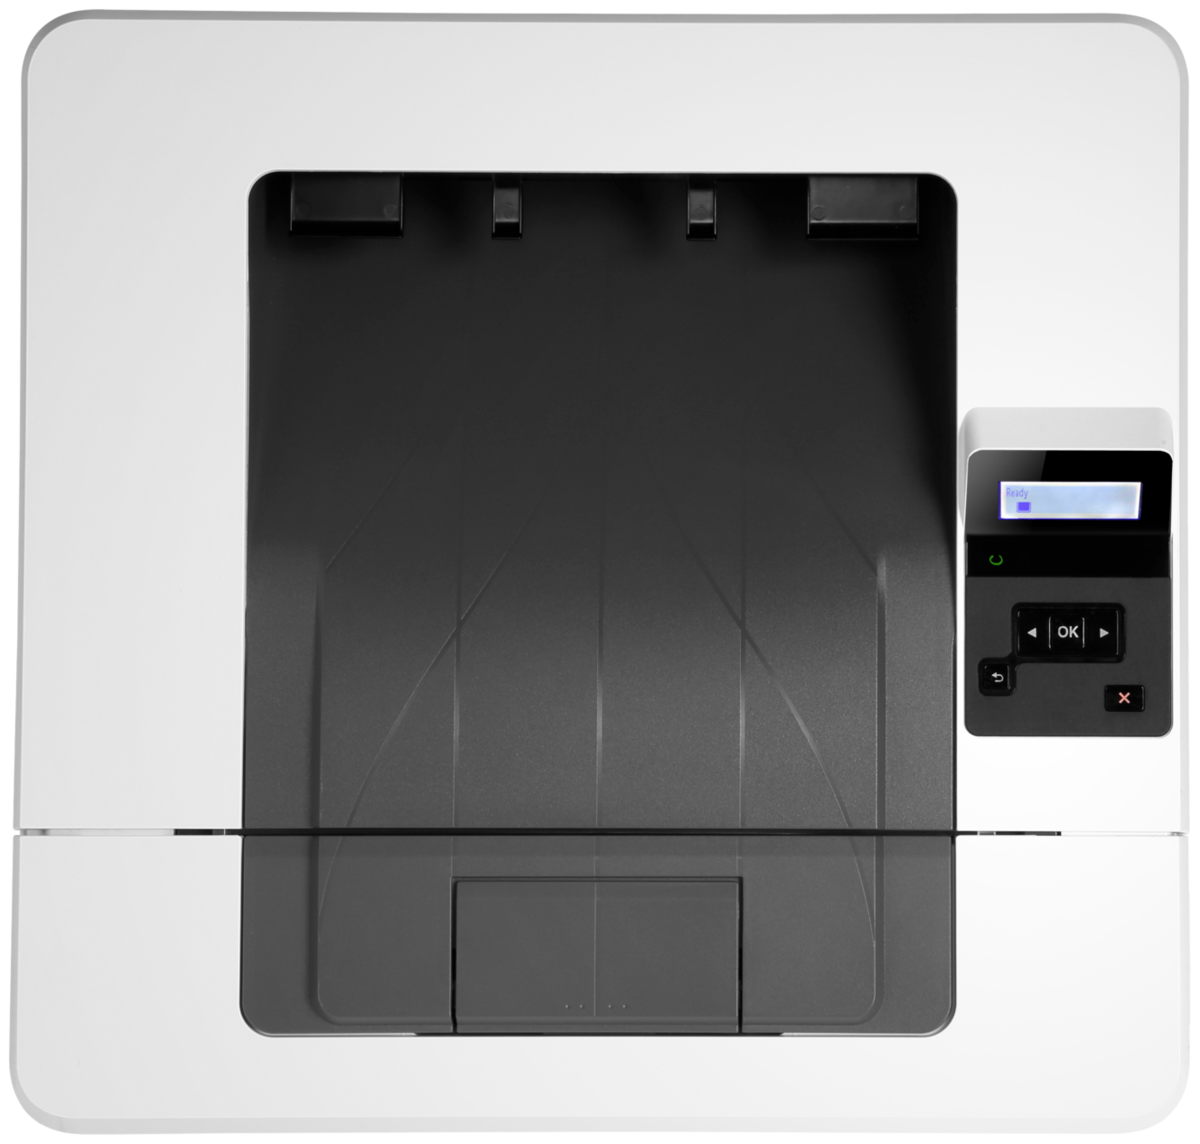 Цена Принтер HP LaserJet Pro M404n